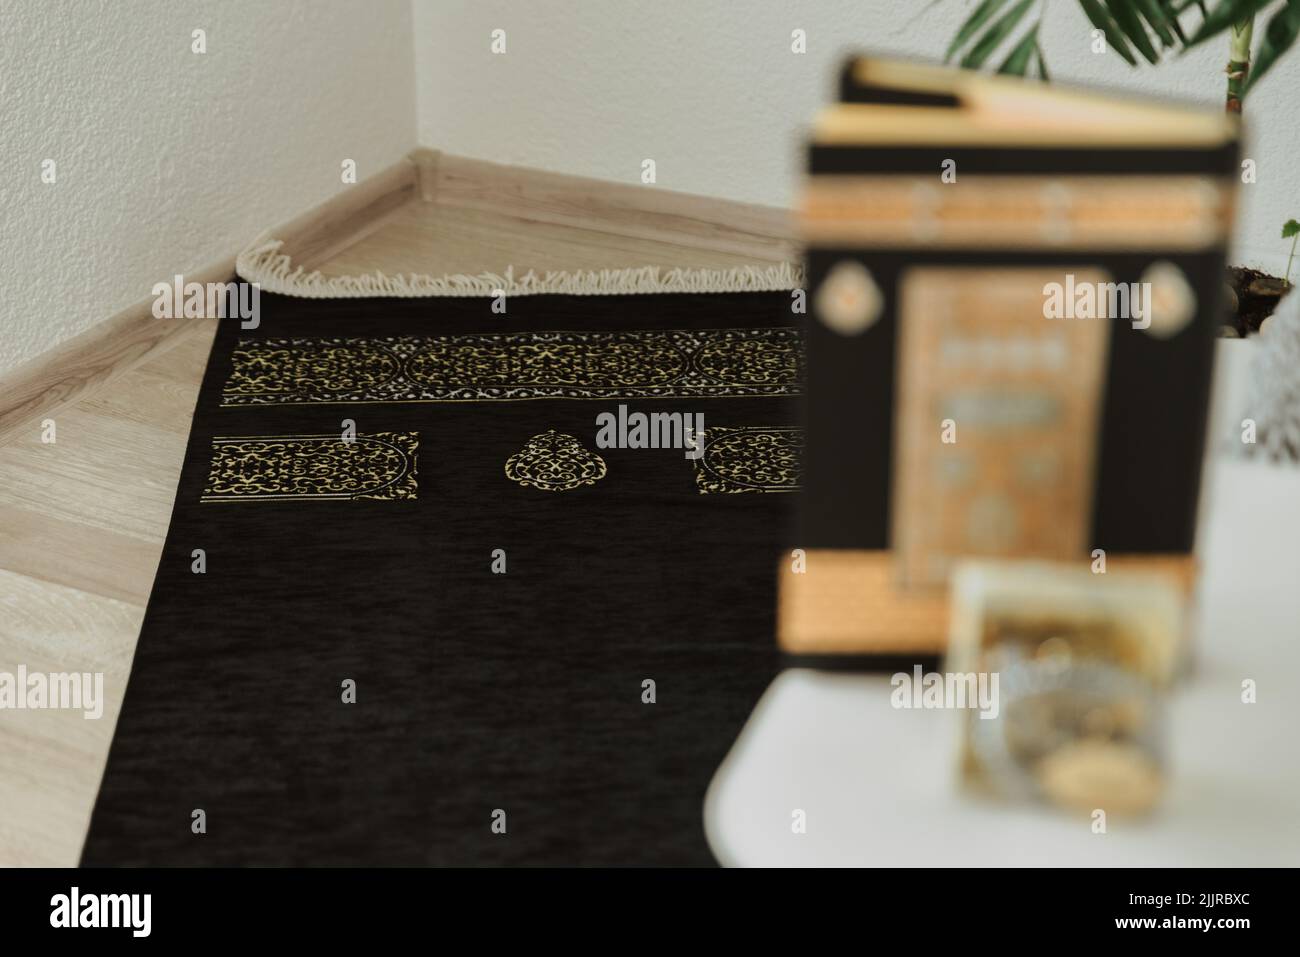 La preghiera set-tappeto nero e velluto nero Quran, decorato con modello Kaaba, e rosario fatto di perle con l'iscrizione Ramadan Kareem Foto Stock